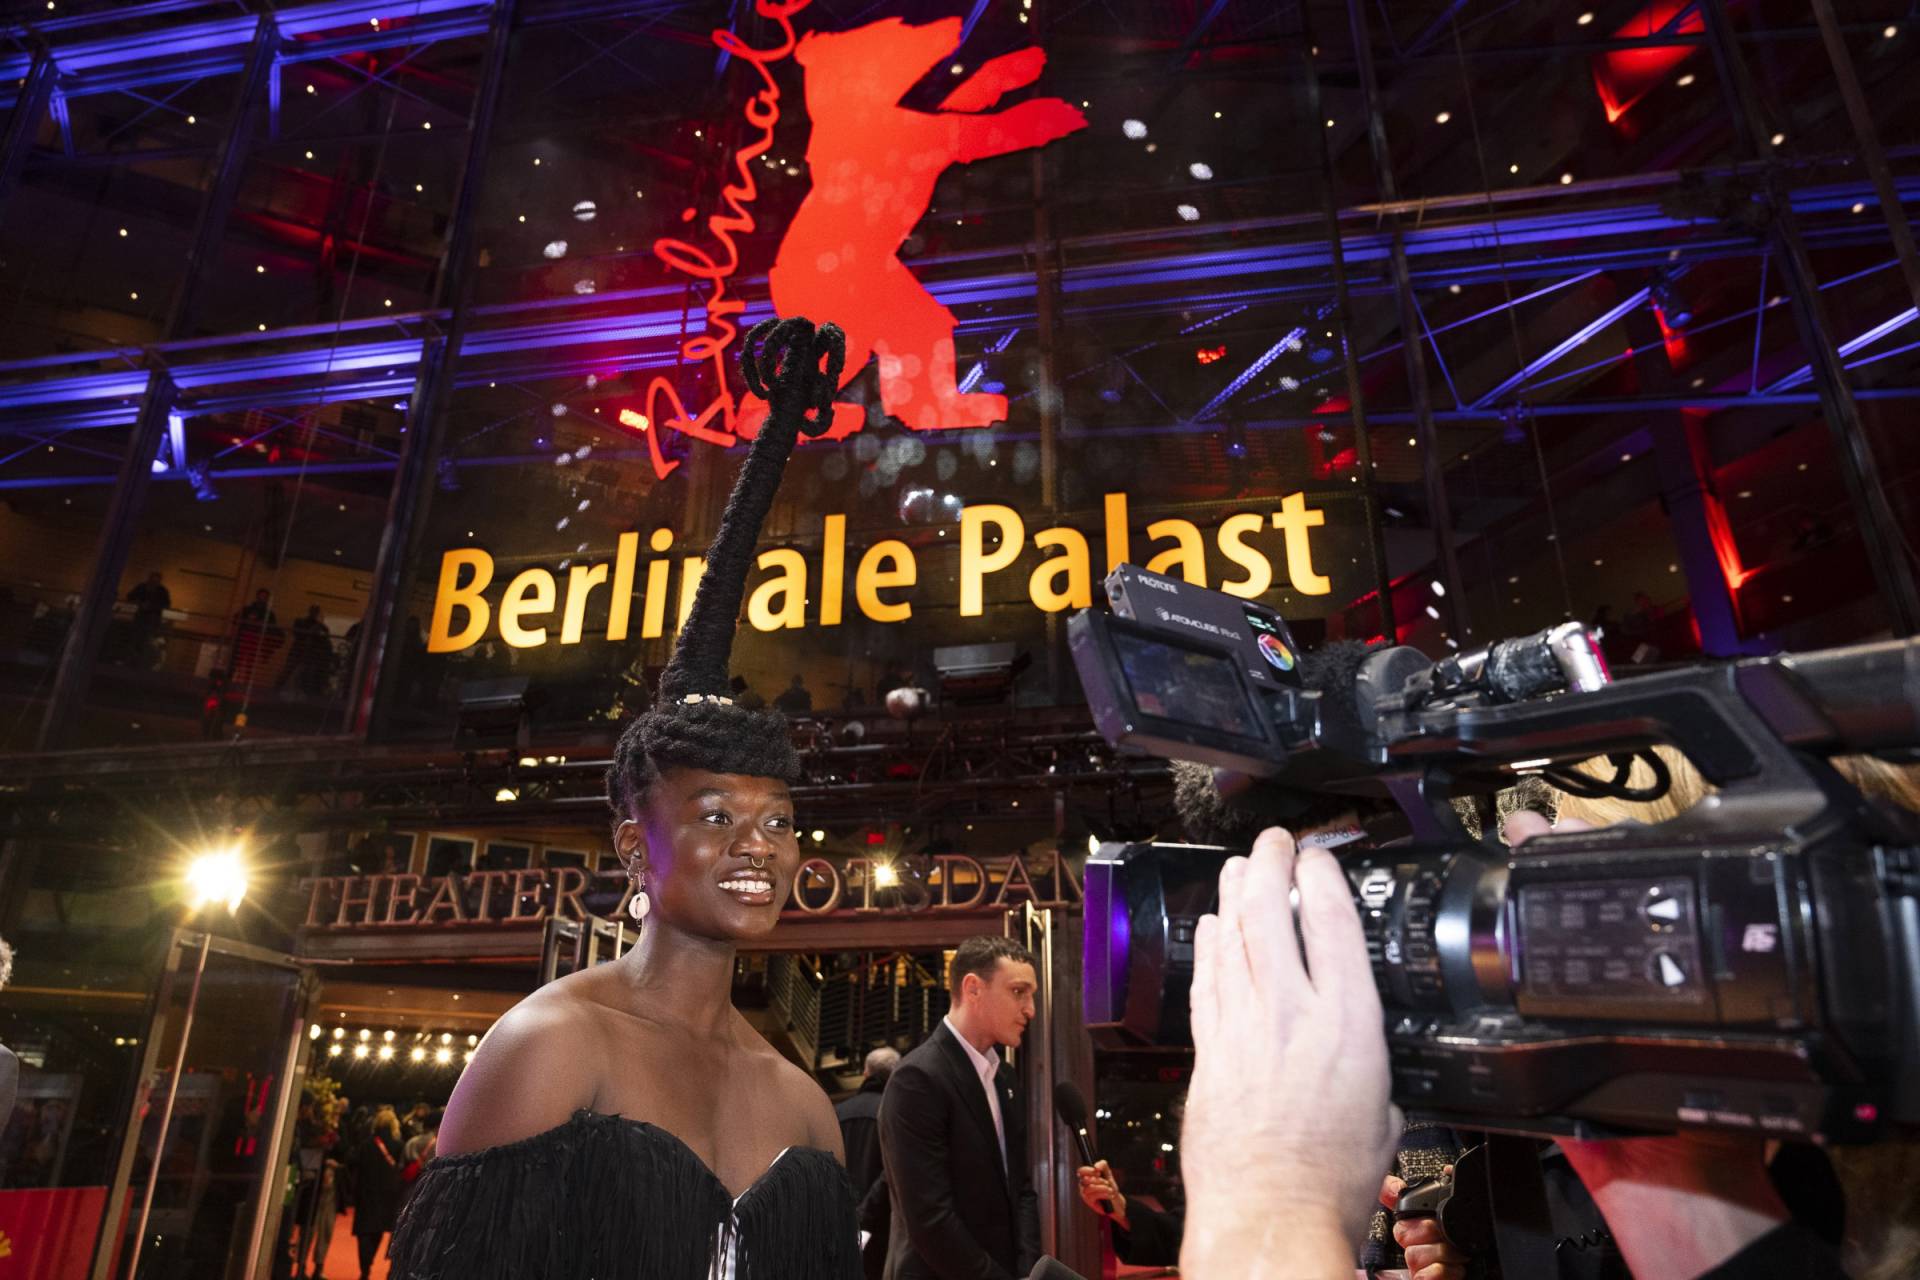 Berlinale se blíží a jak můžete být u toho: vyhlašujeme soutěž